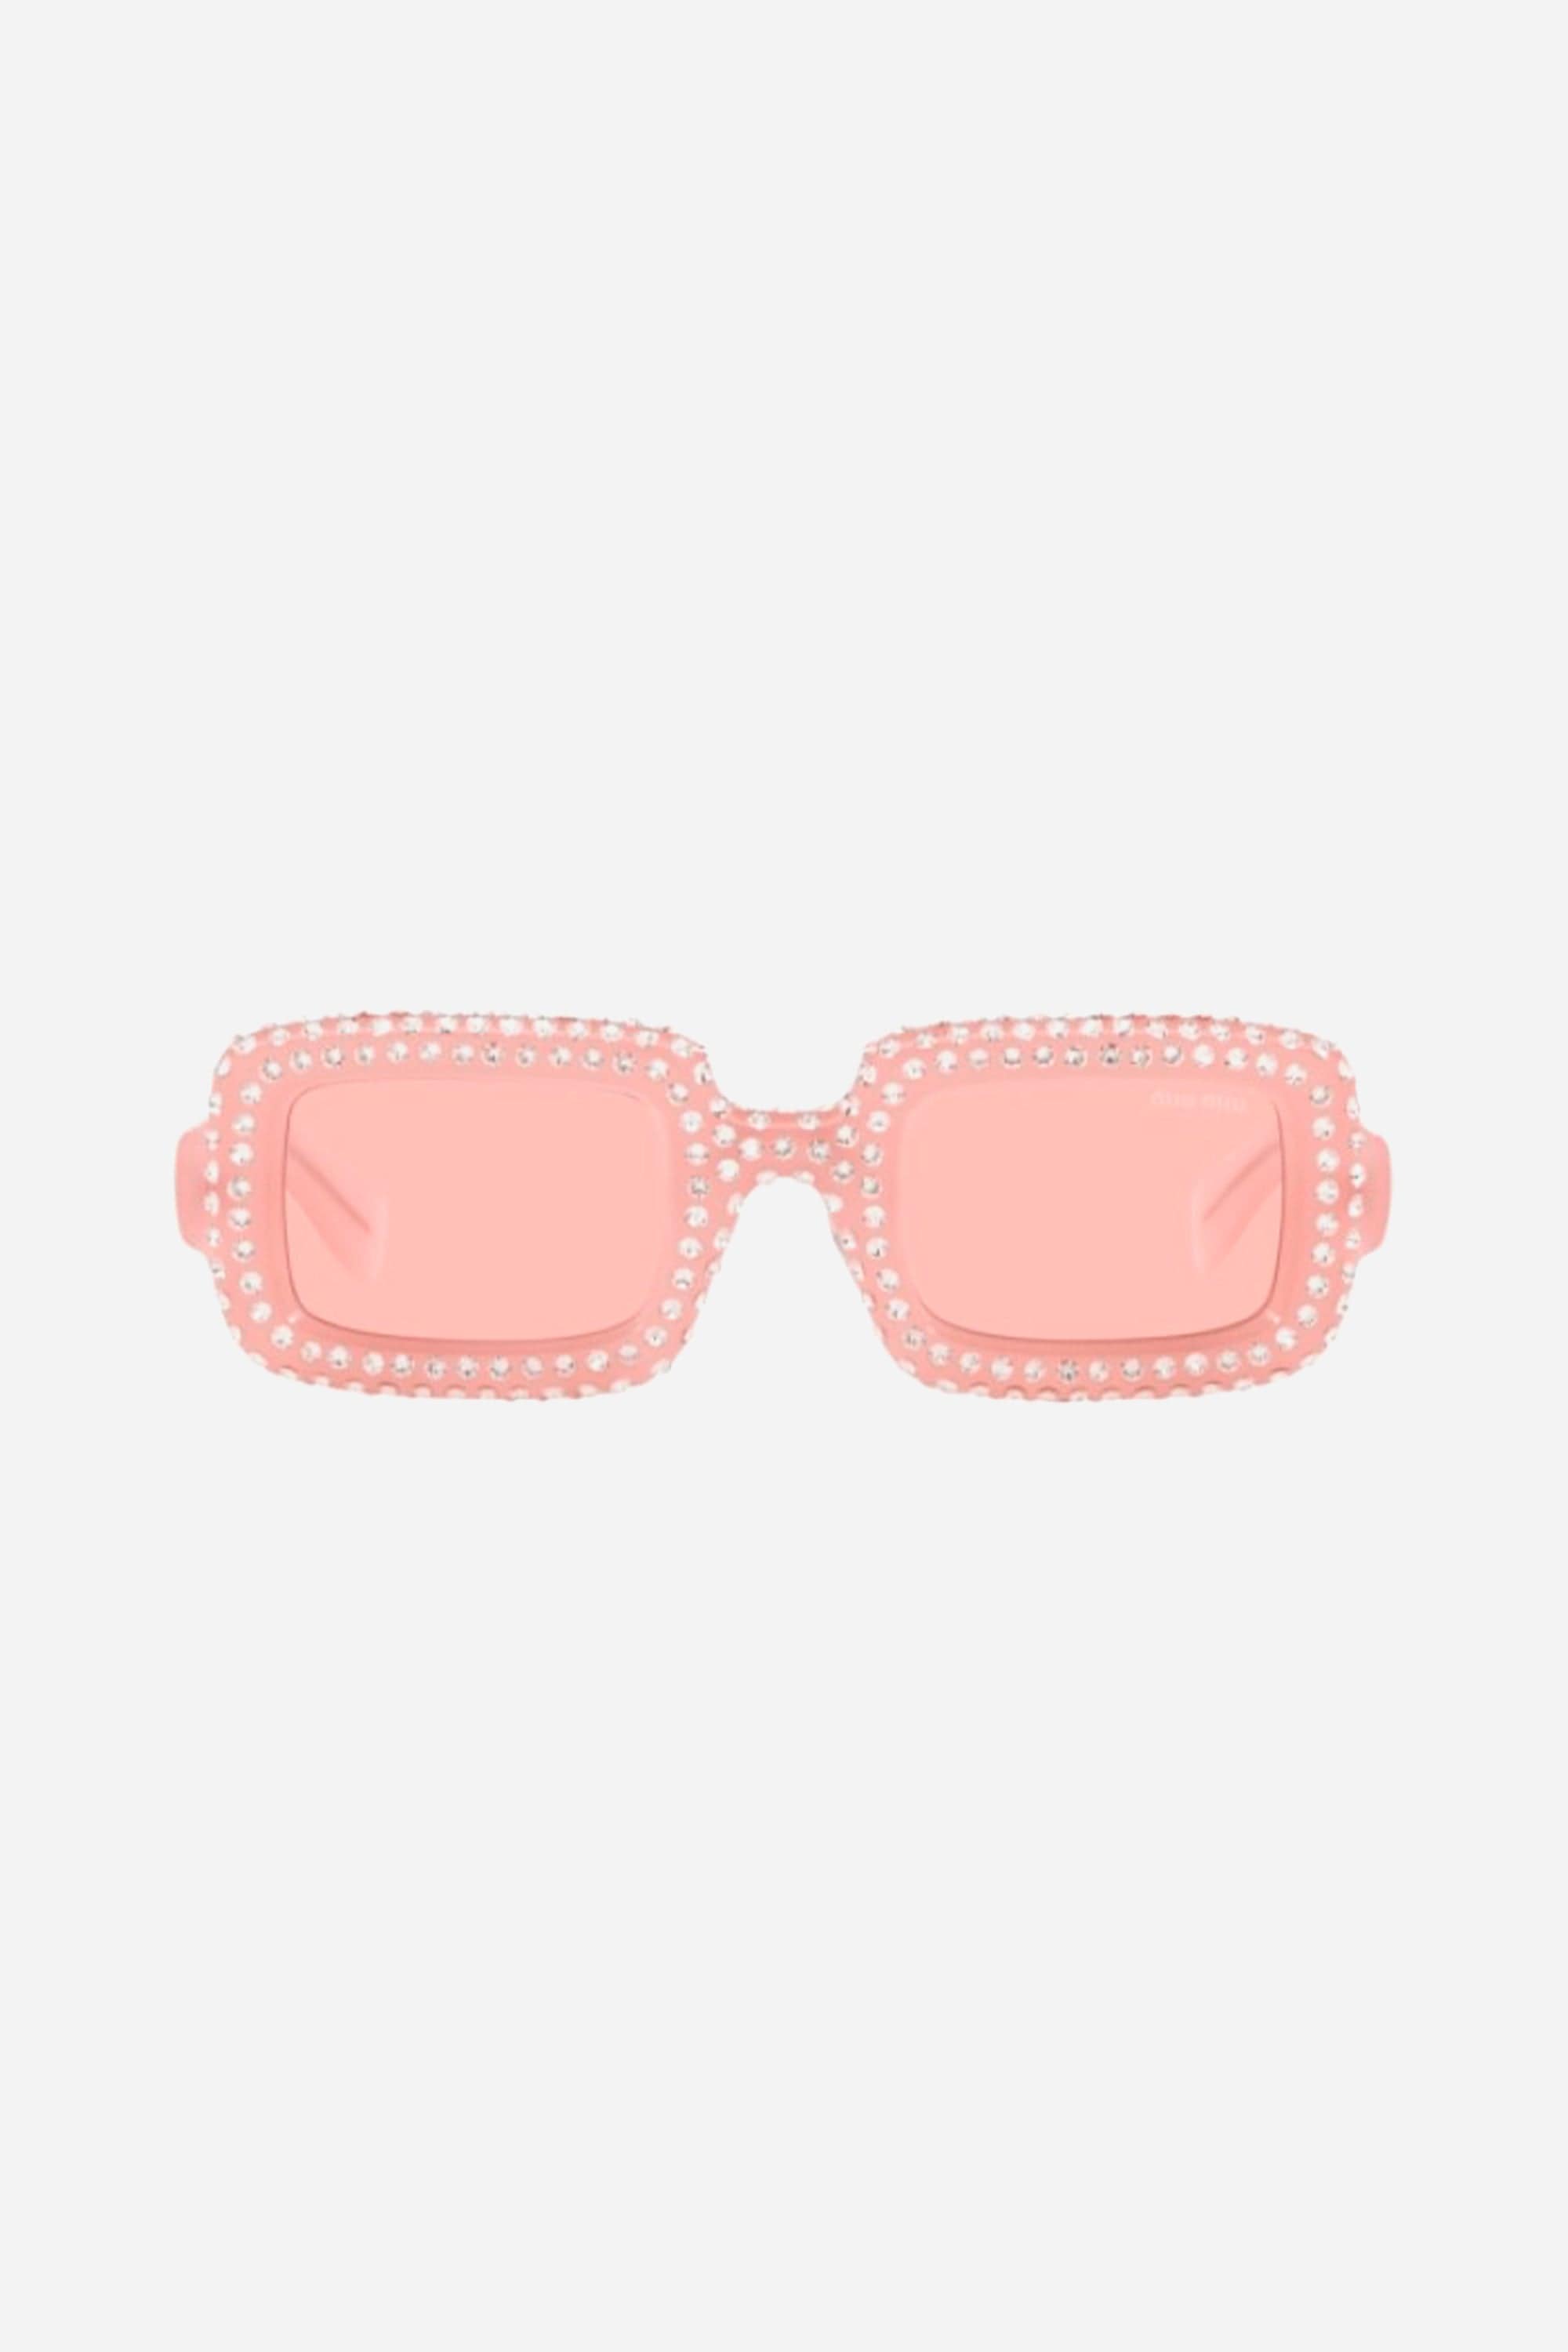 Miu Miu rectangular acetate sparkly crystal pink sunglasses - Eyewear Club